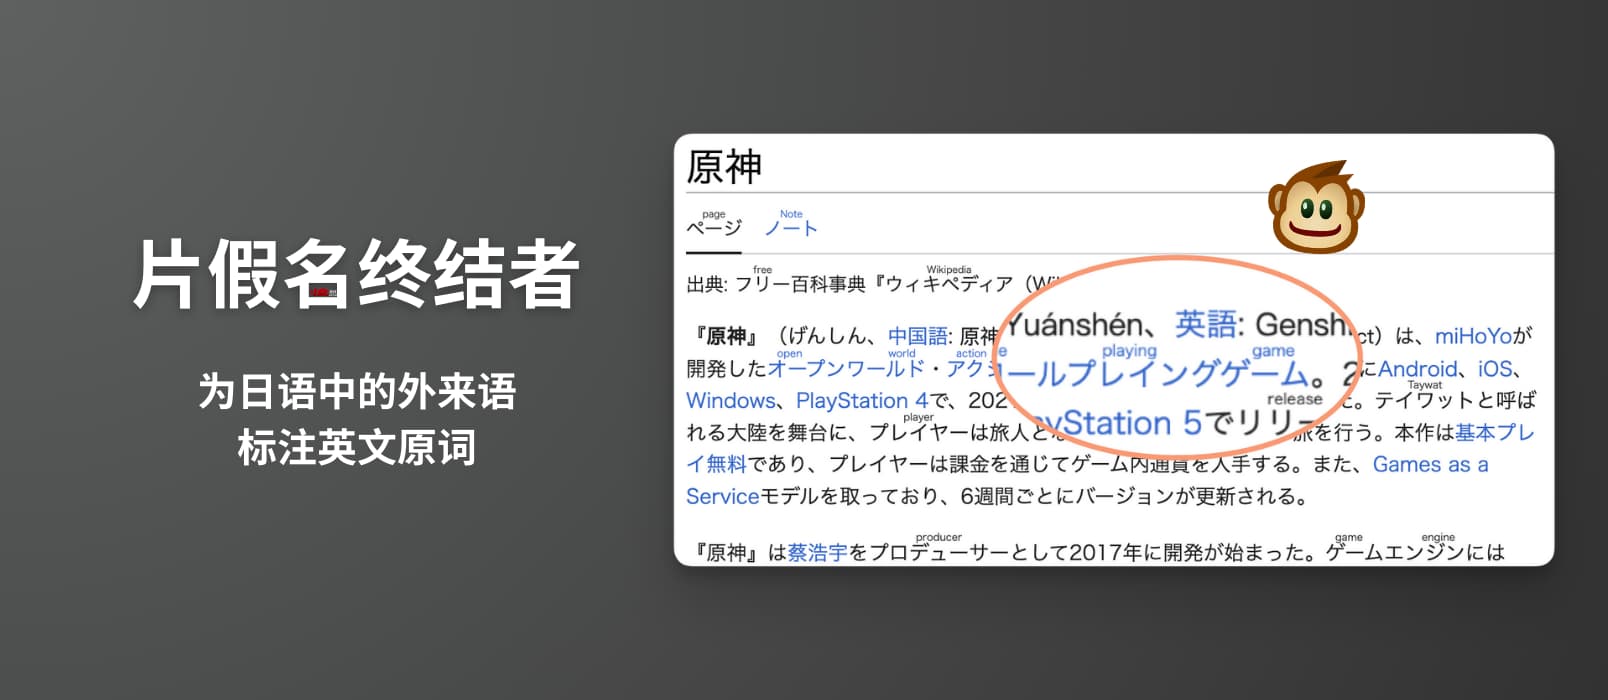 片假名终结者 - 在网页中的日语外来语上方标注英文原词[油猴脚本]